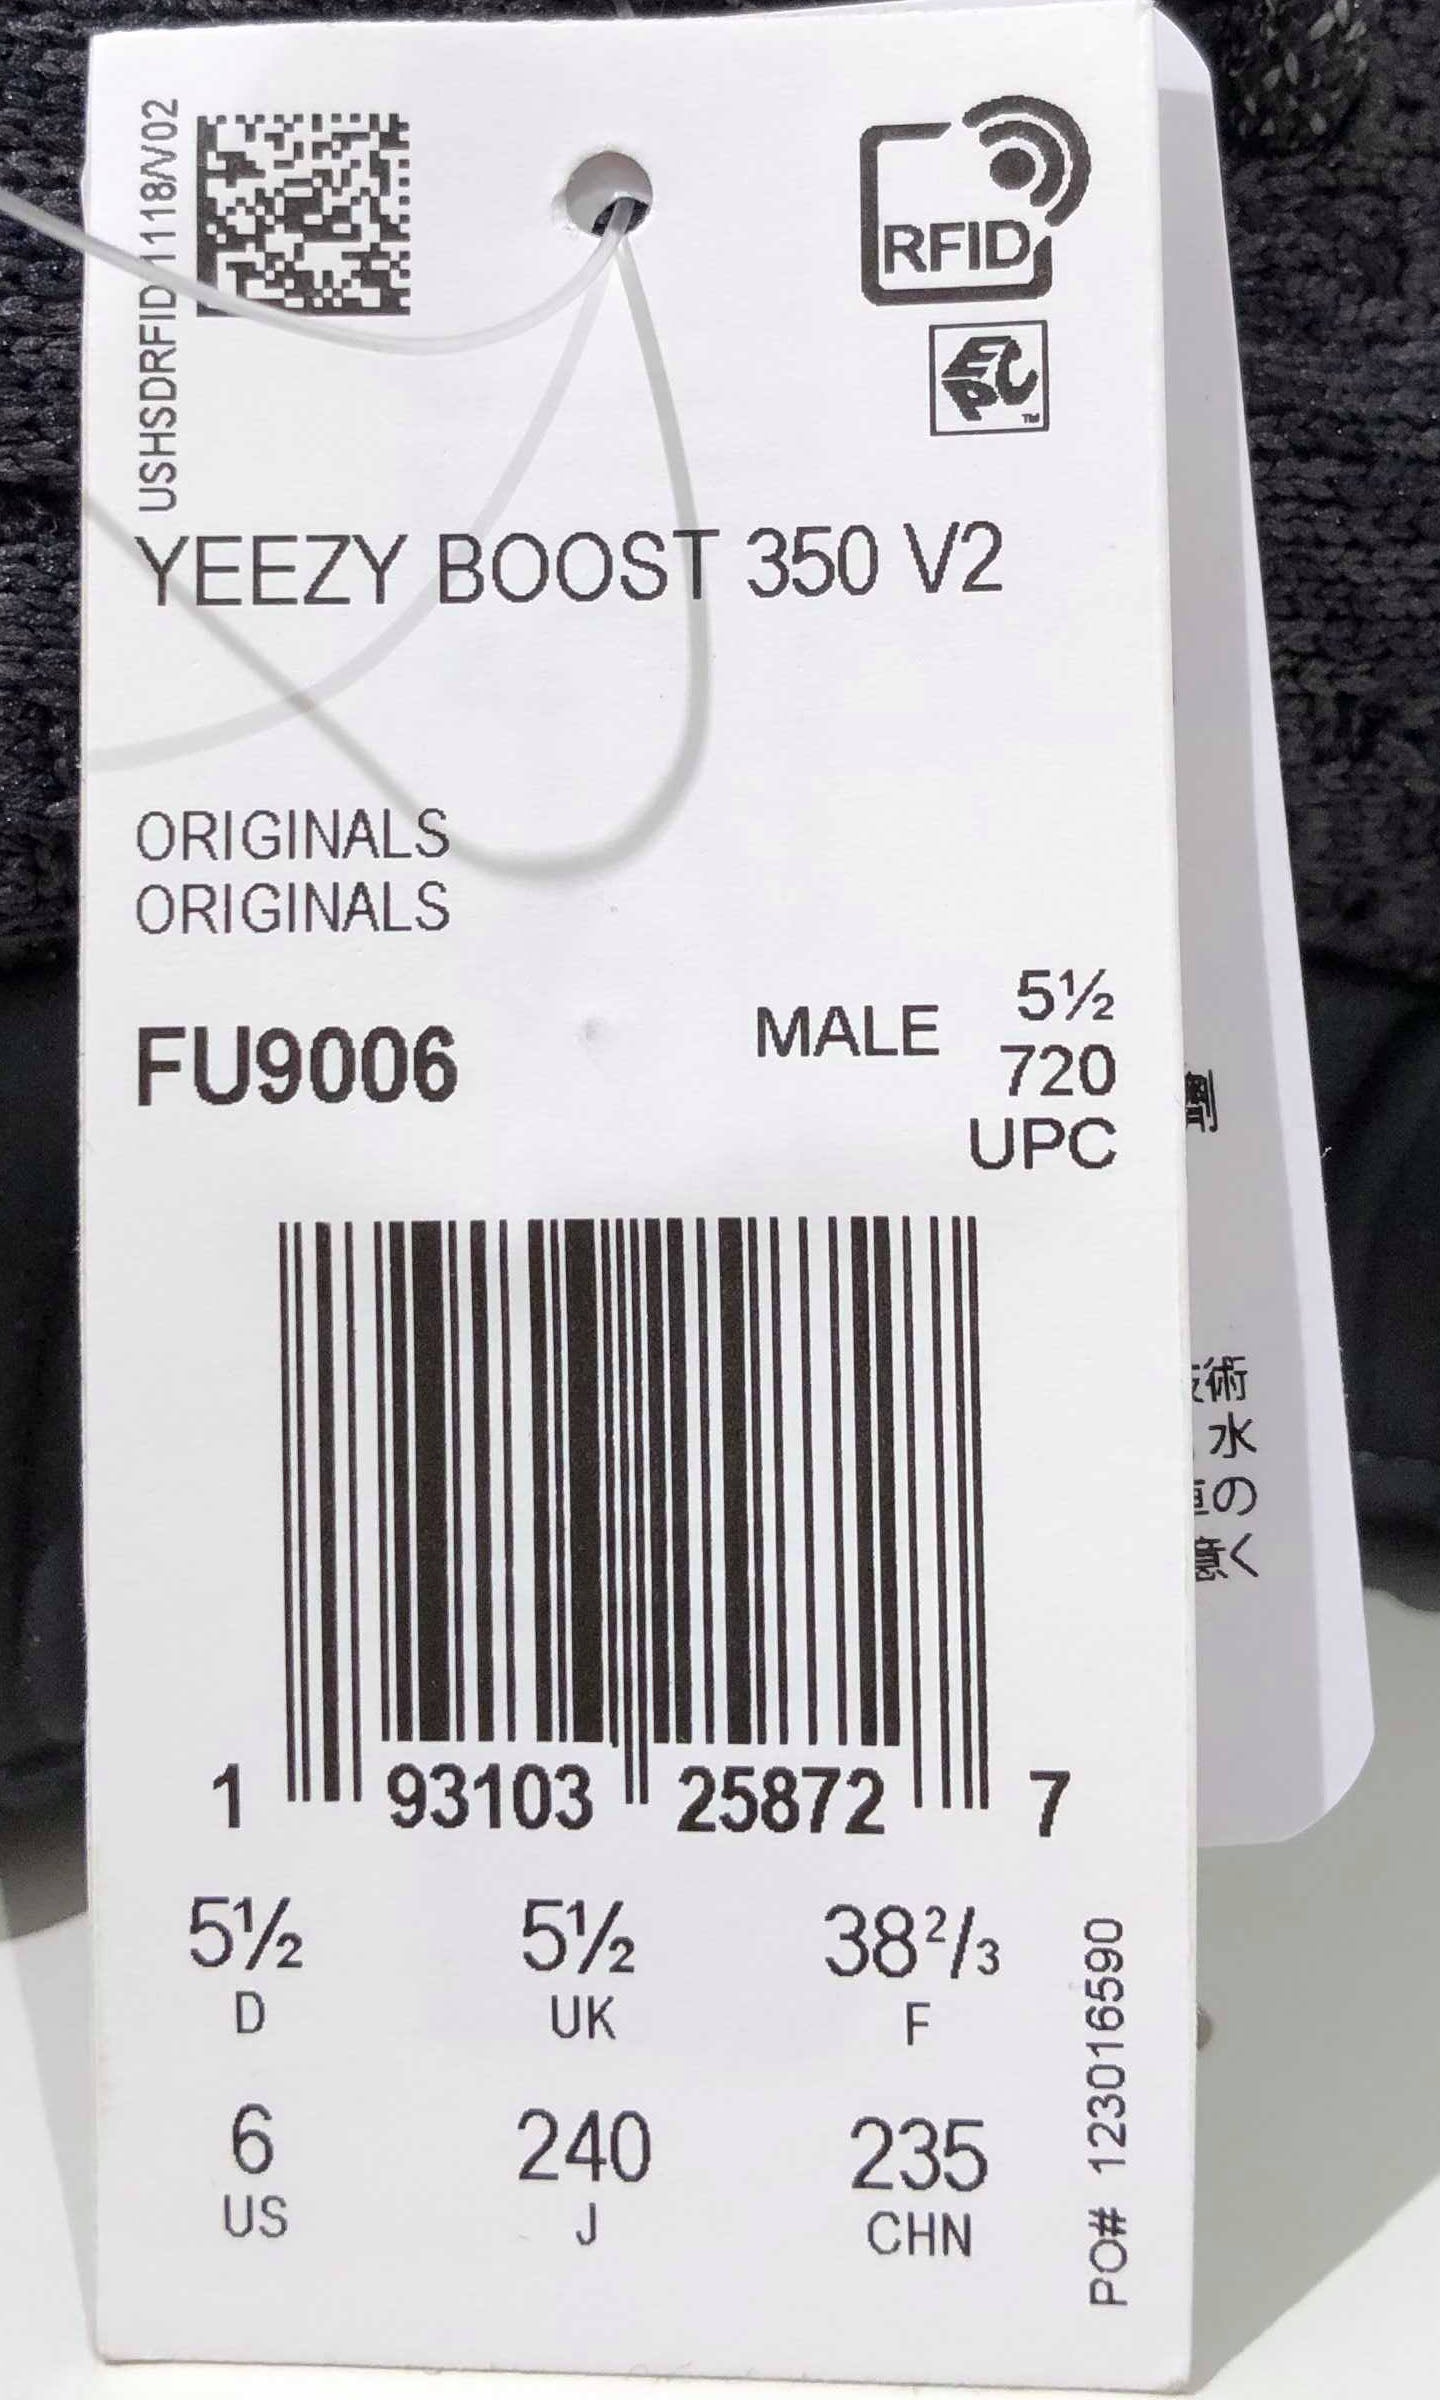 Adidas Yeezy Boost 350 V2 